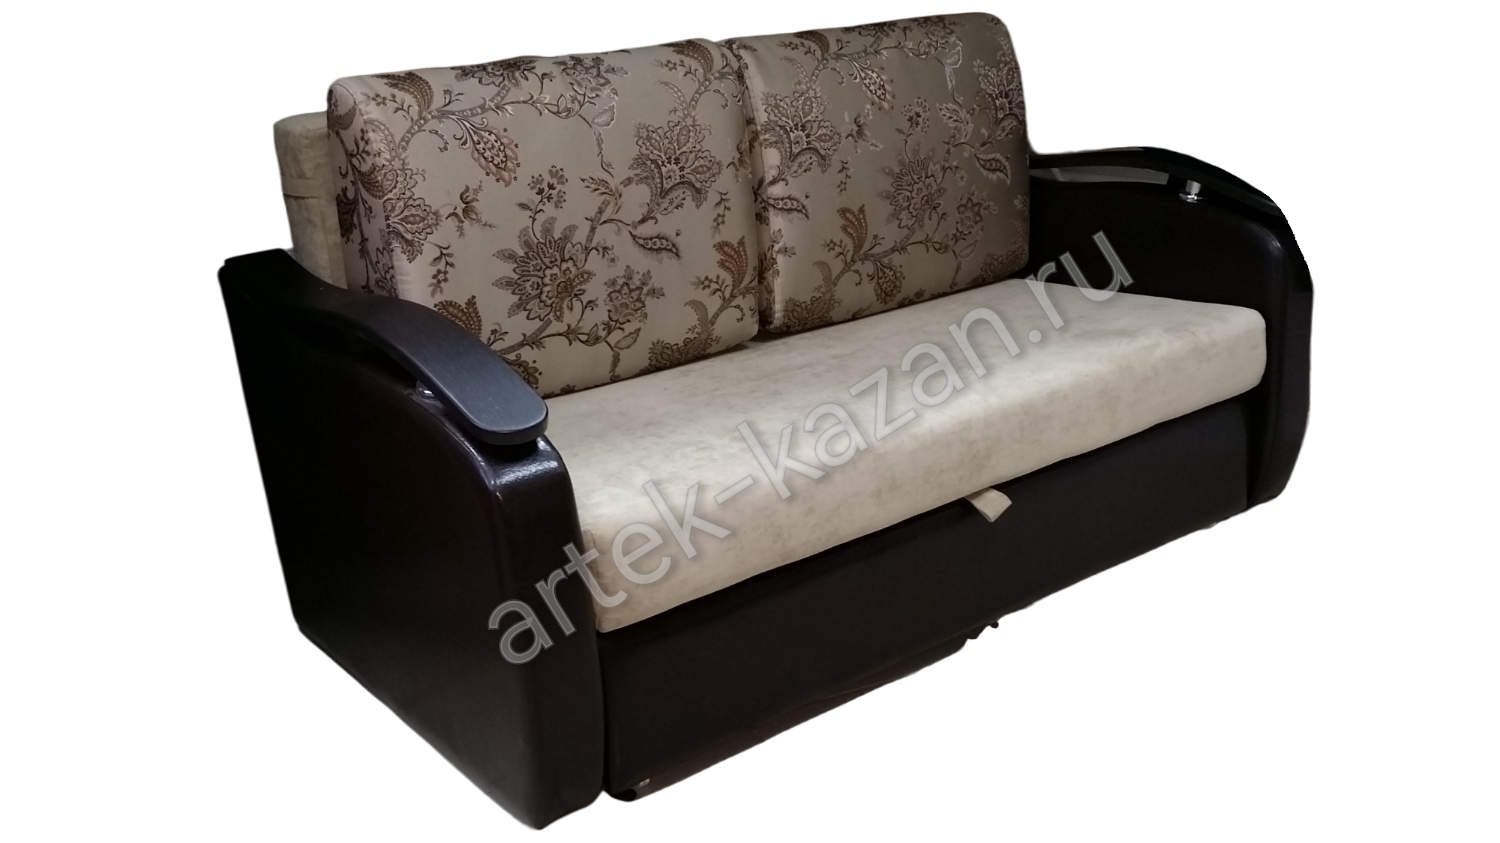 Мини диван на выкатном механизме Миник фото № 13. Купить недорогой диван по низкой цене от производителя можно у нас.